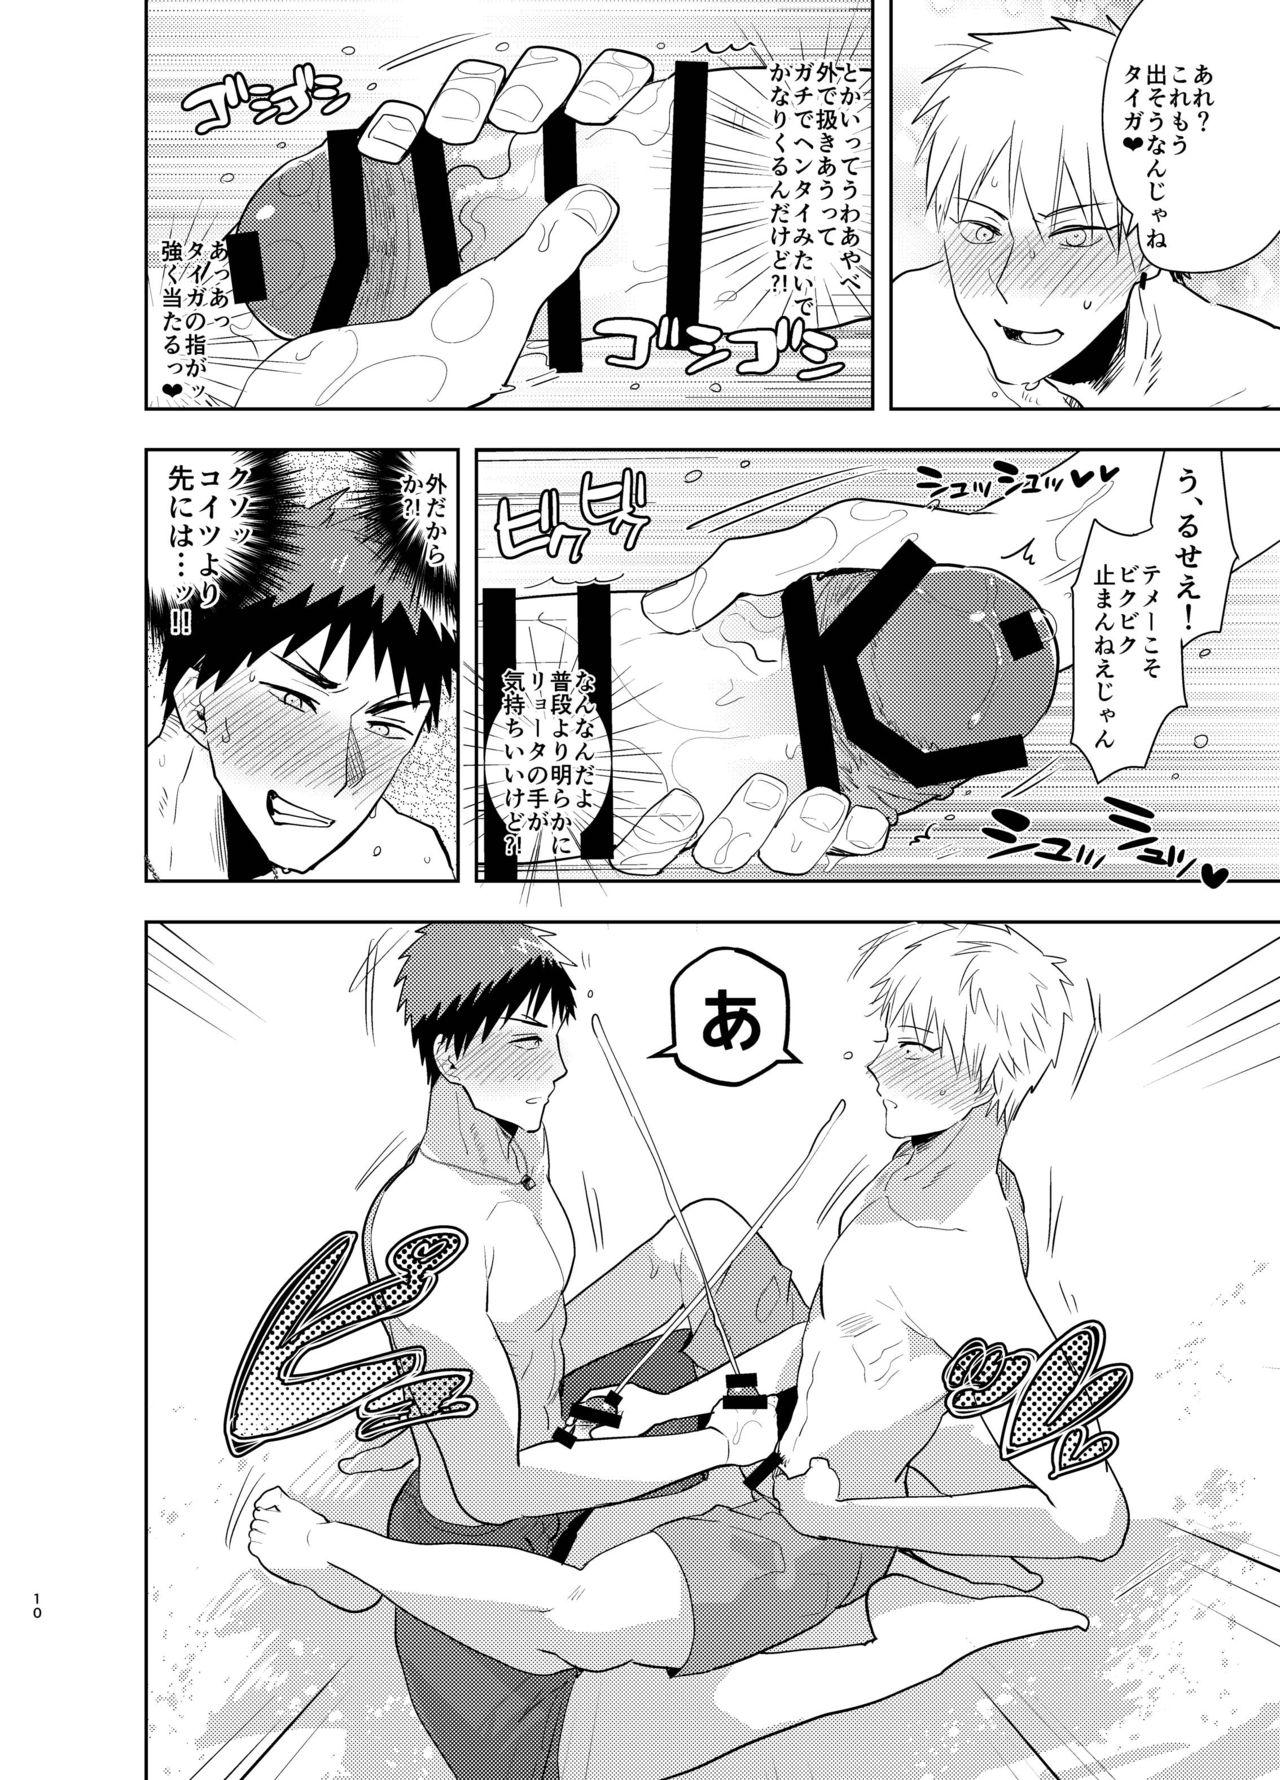 Teen Kagami-kun no Ero hon 13 Natsu Danshi in Anaba Beach - Kuroko no basuke Swingers - Page 9